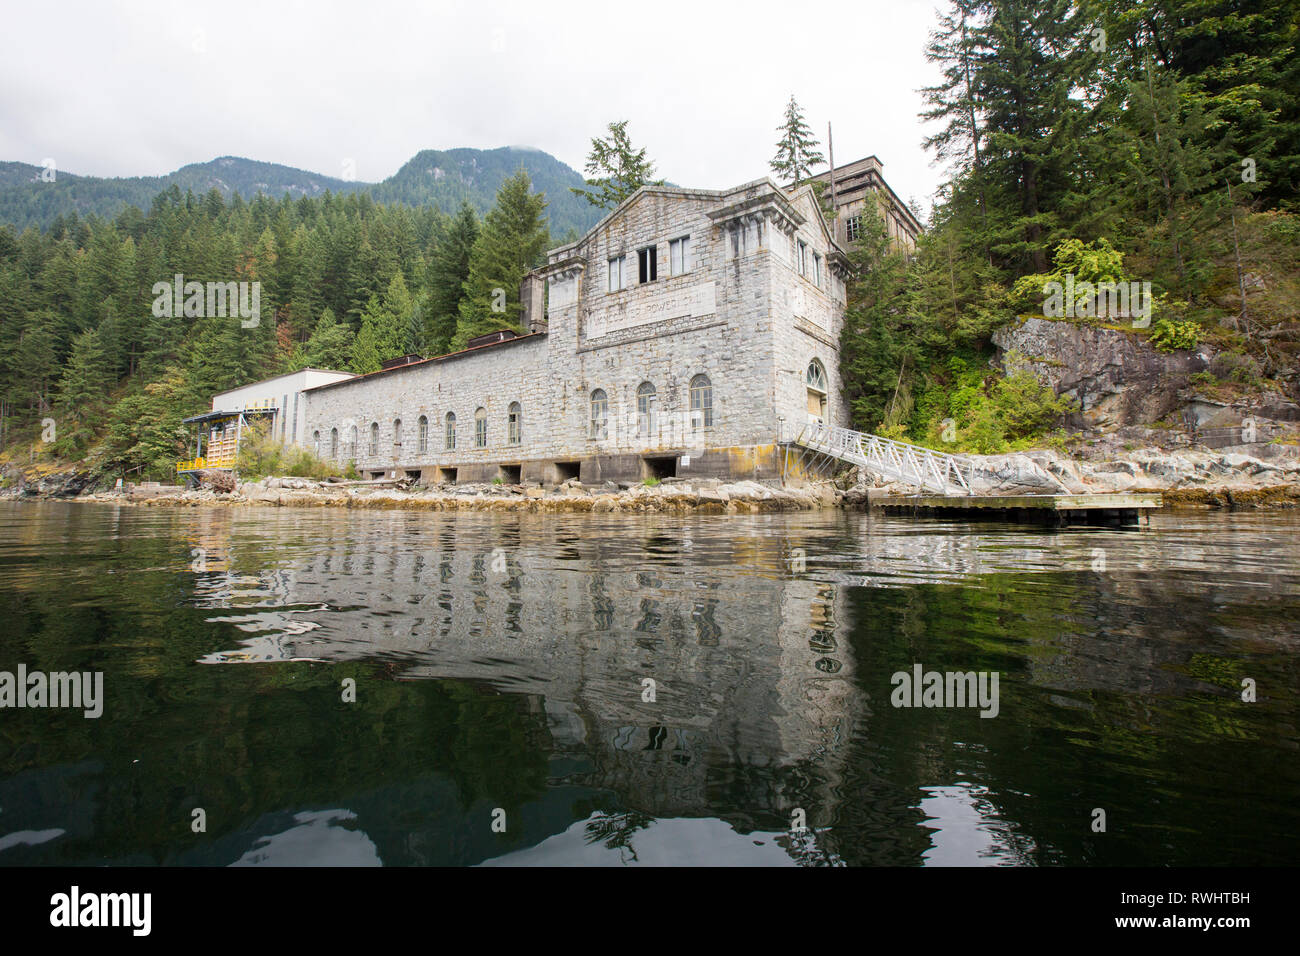 La storica Buntzen casa potenza sul braccio indiano, British Columbia, Canada Foto Stock